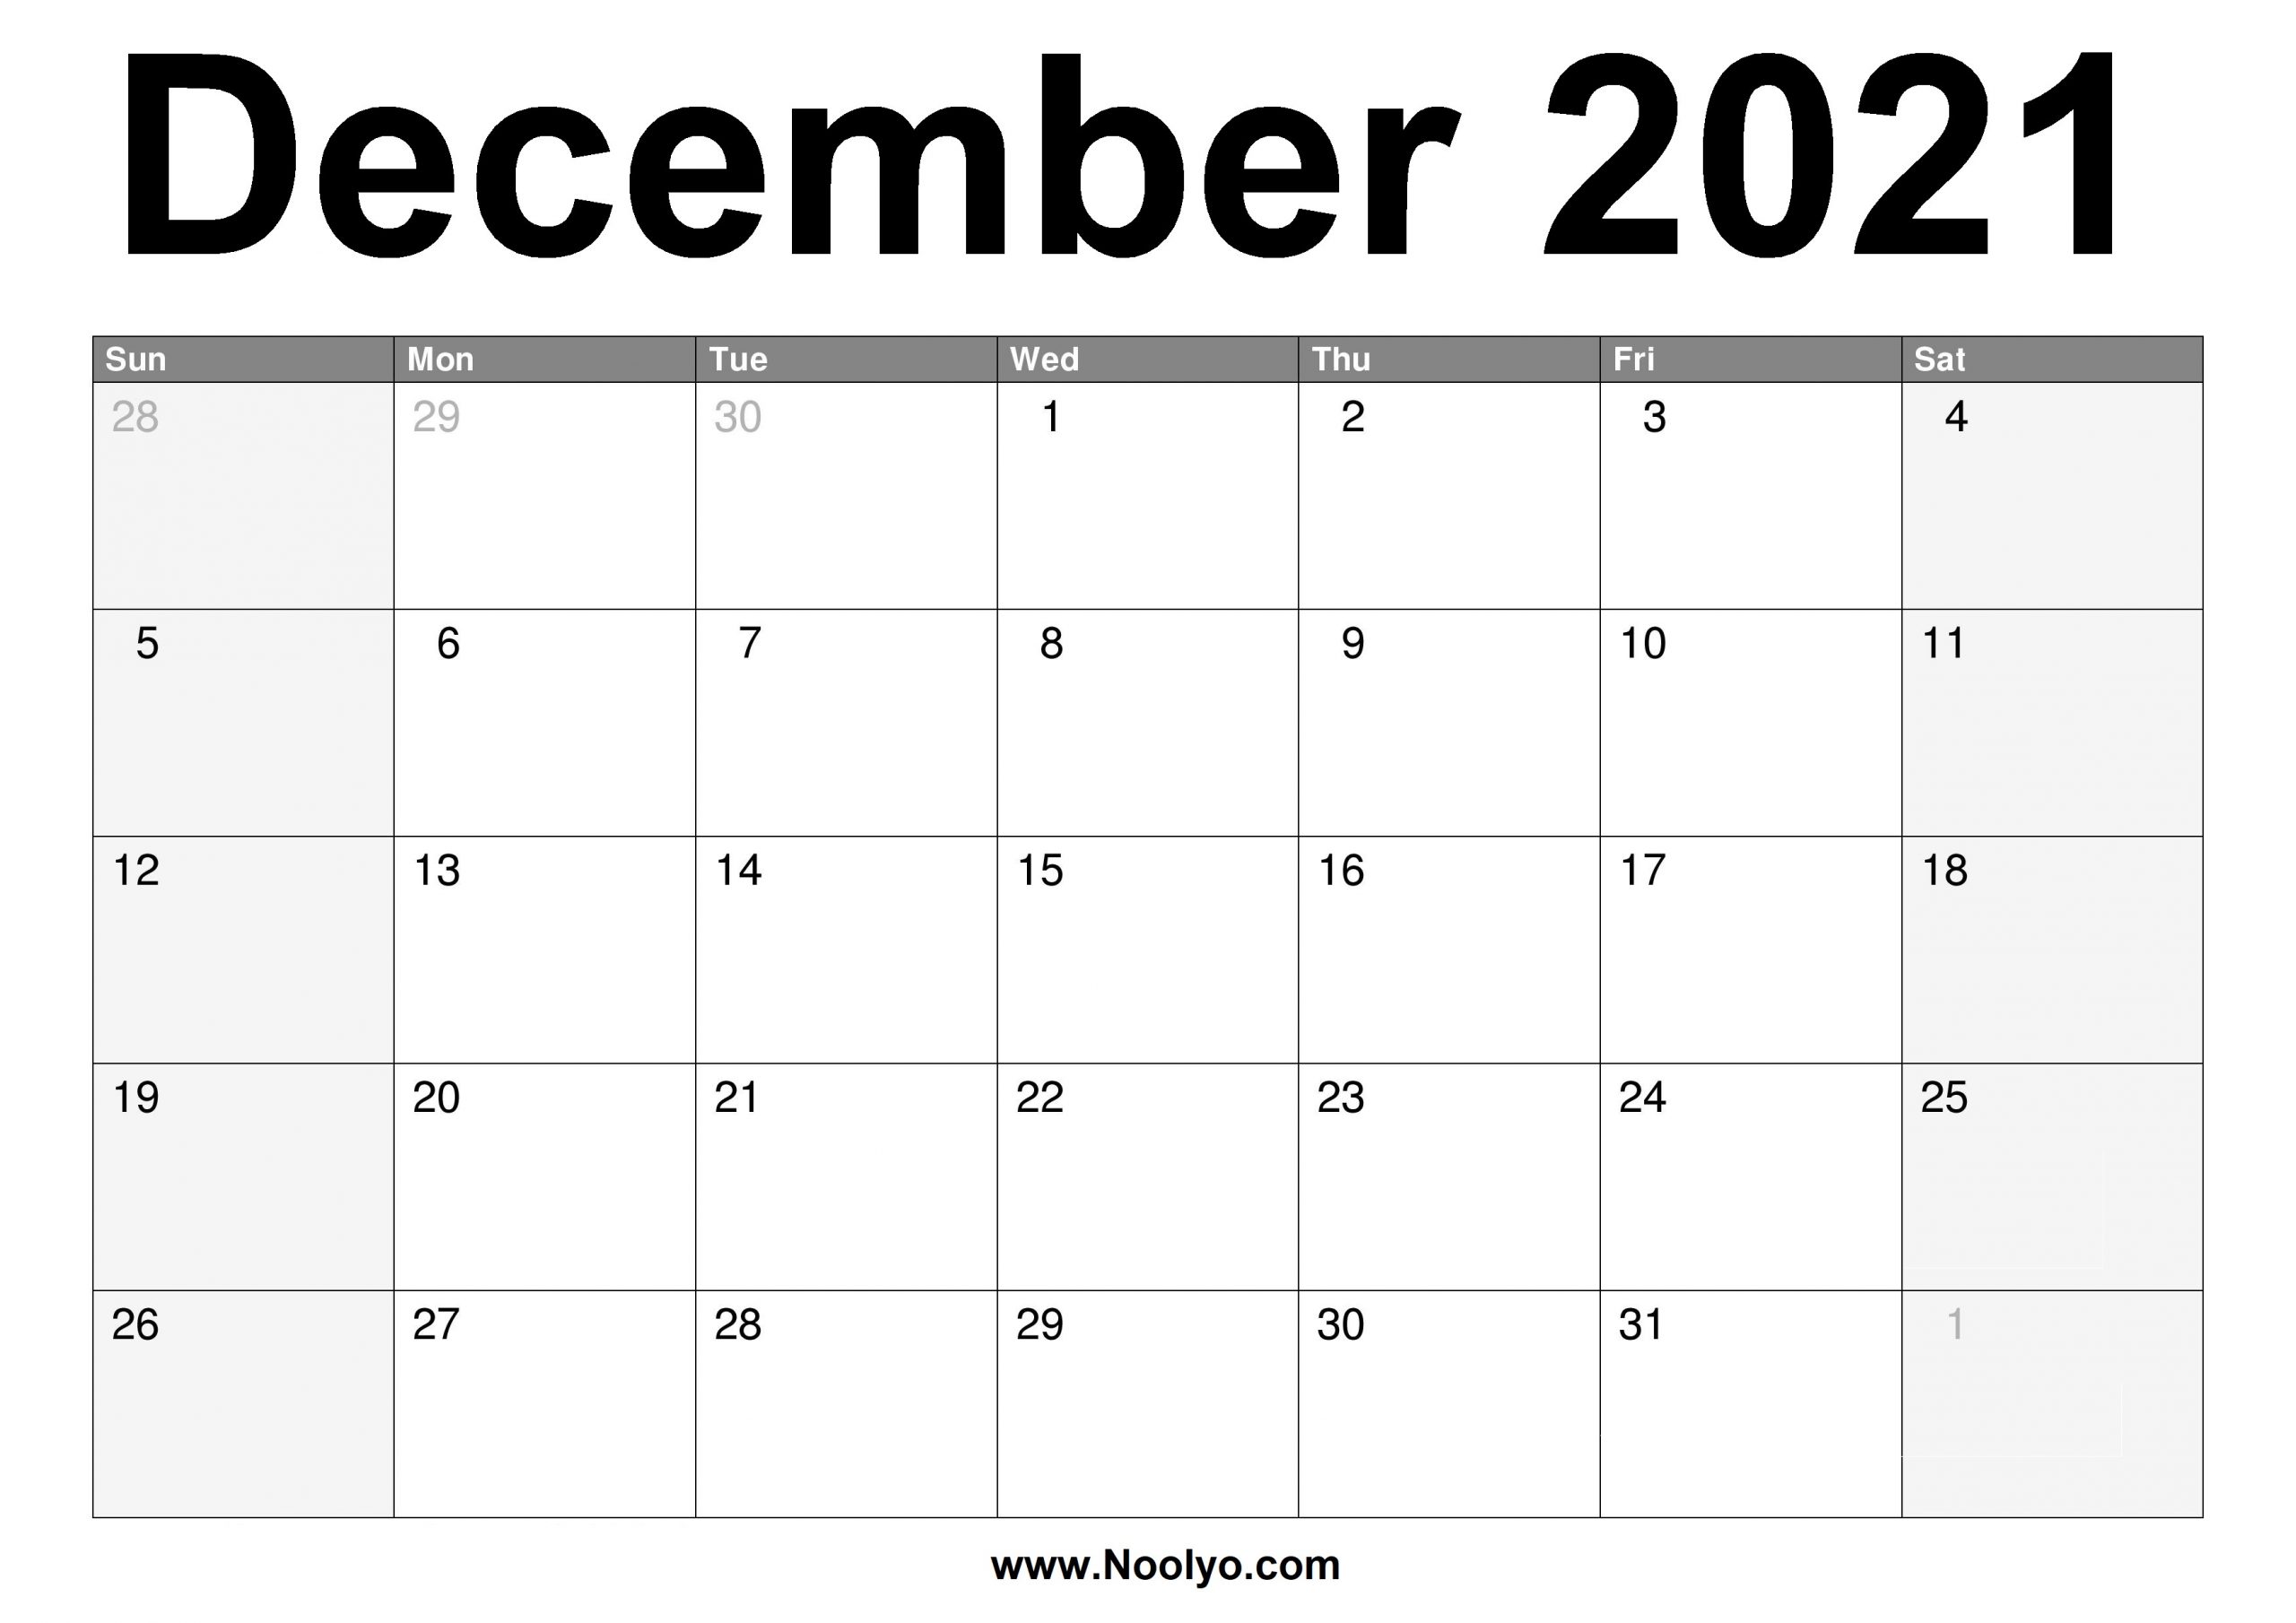 2021 Calendar December | Calendar 2021 Online Calendar December 2020 And January 2021